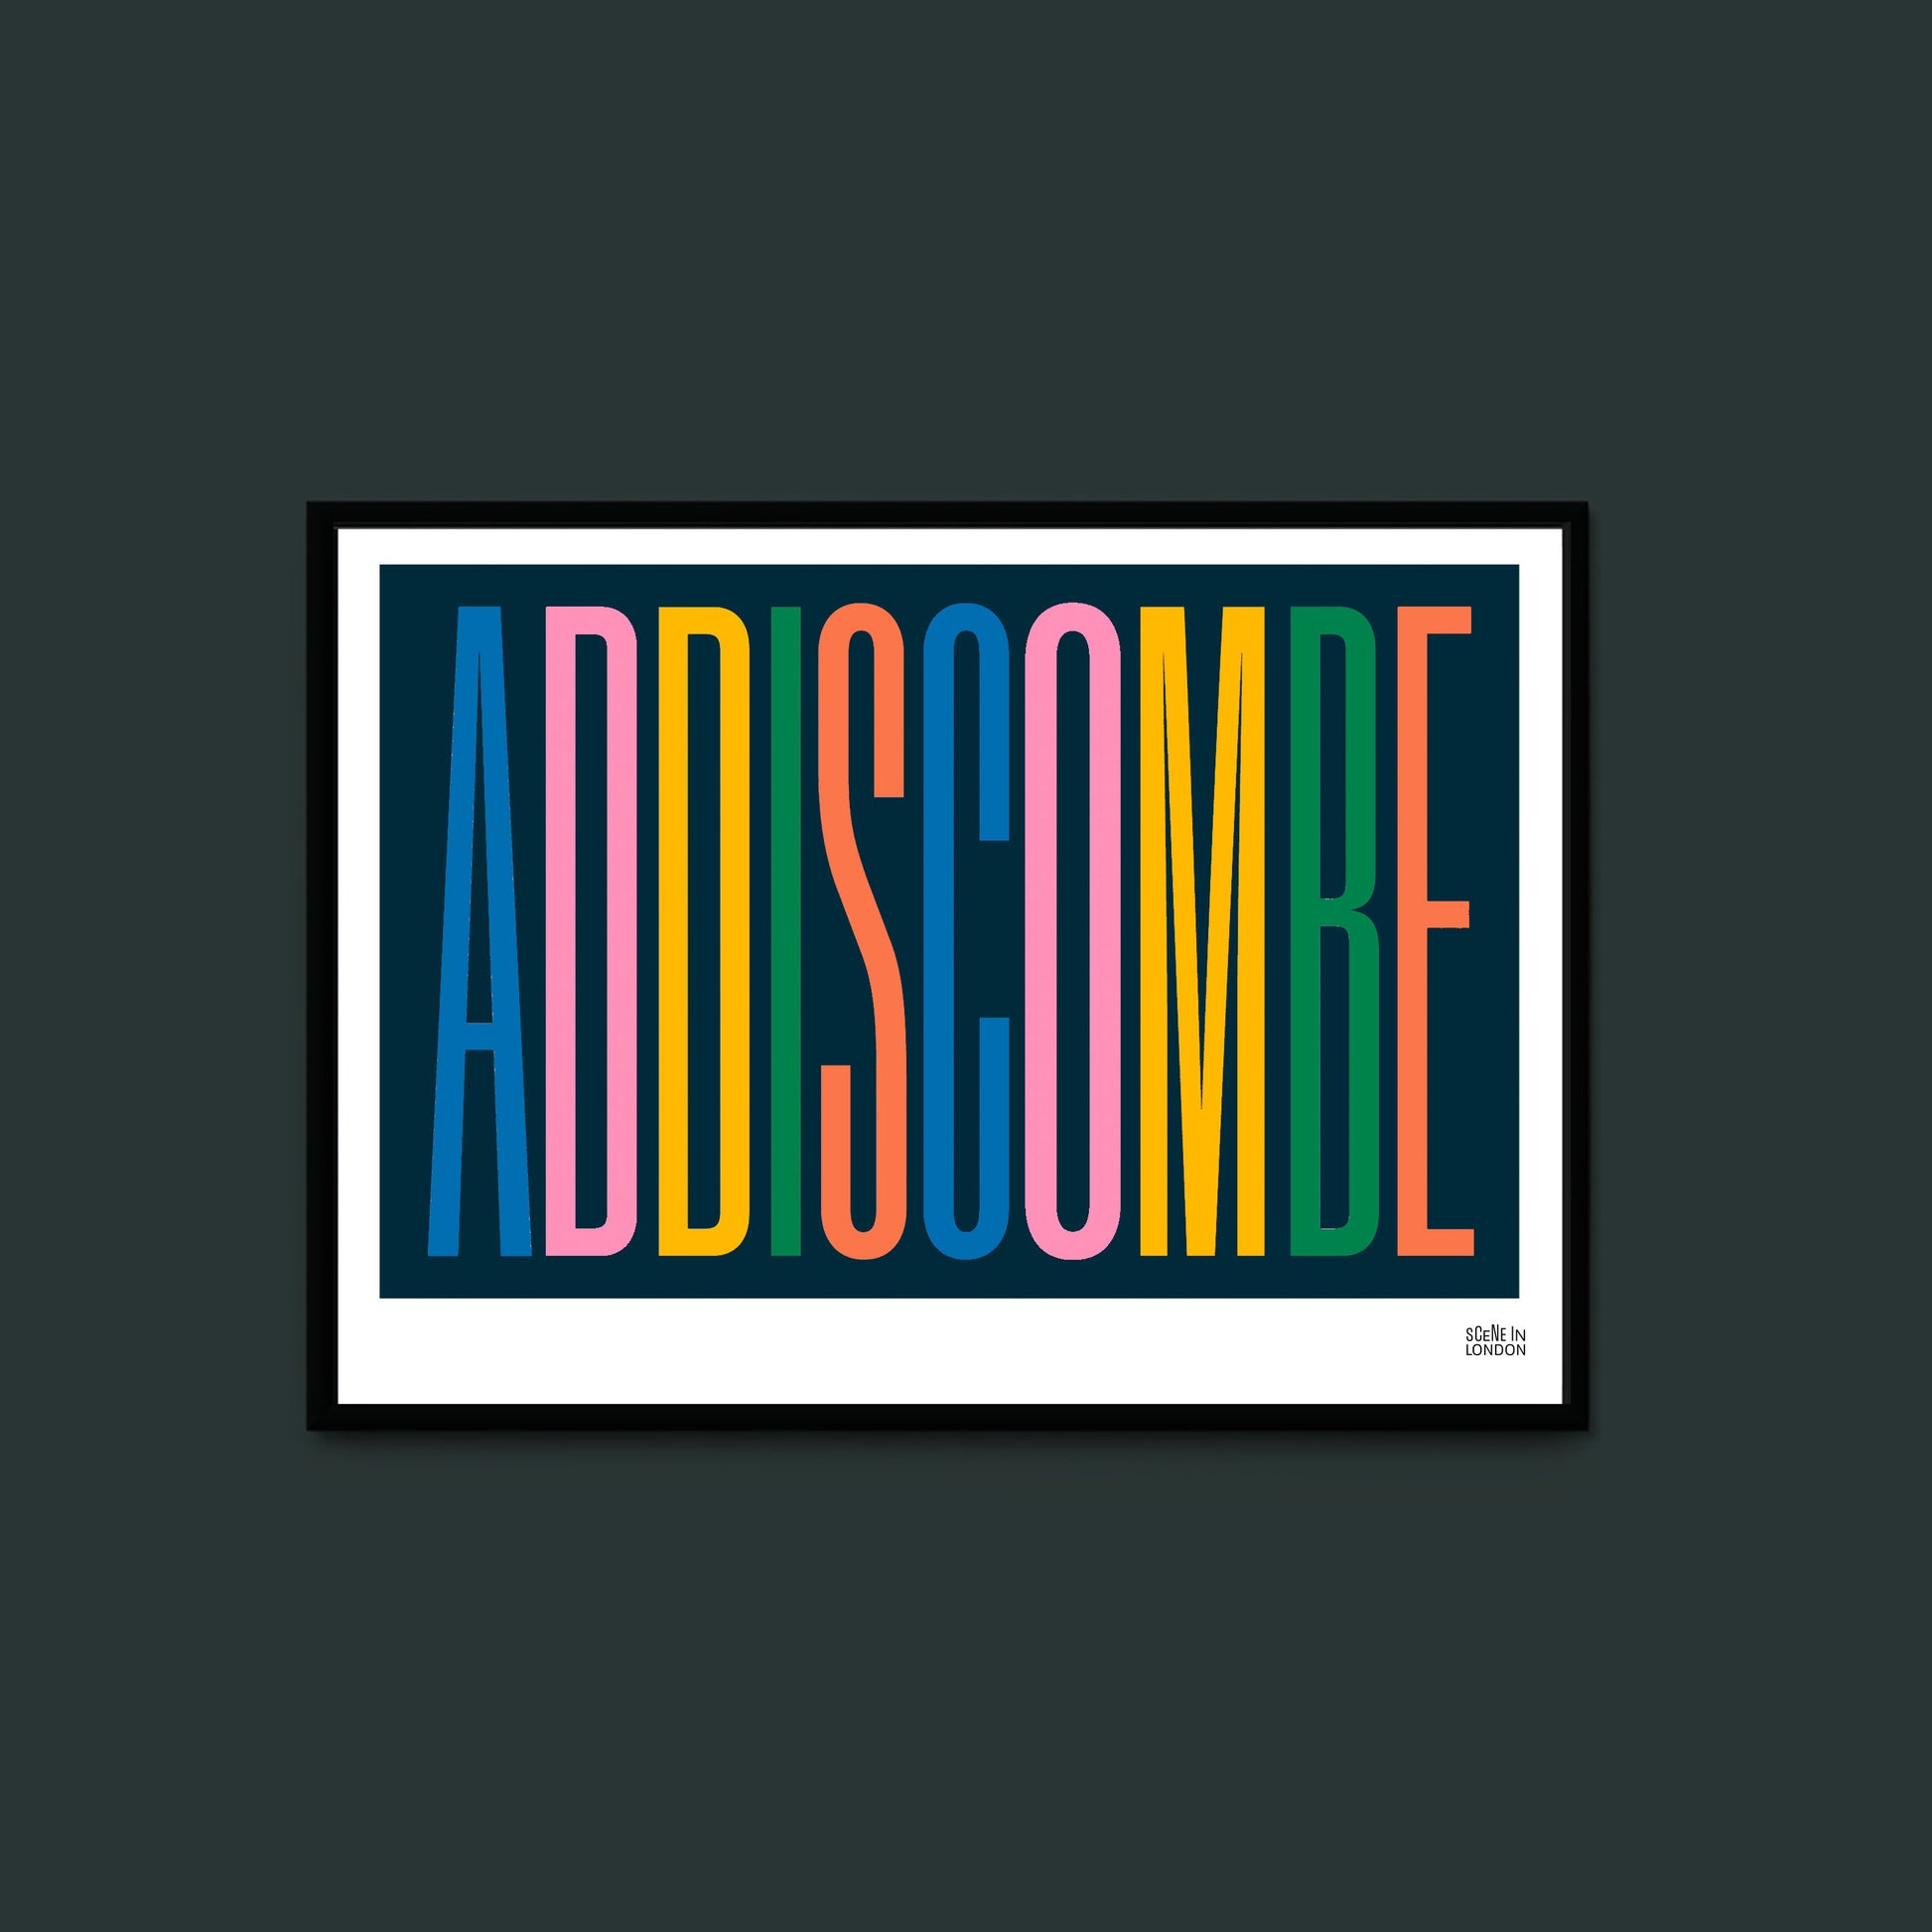 Addiscombe Typography Print